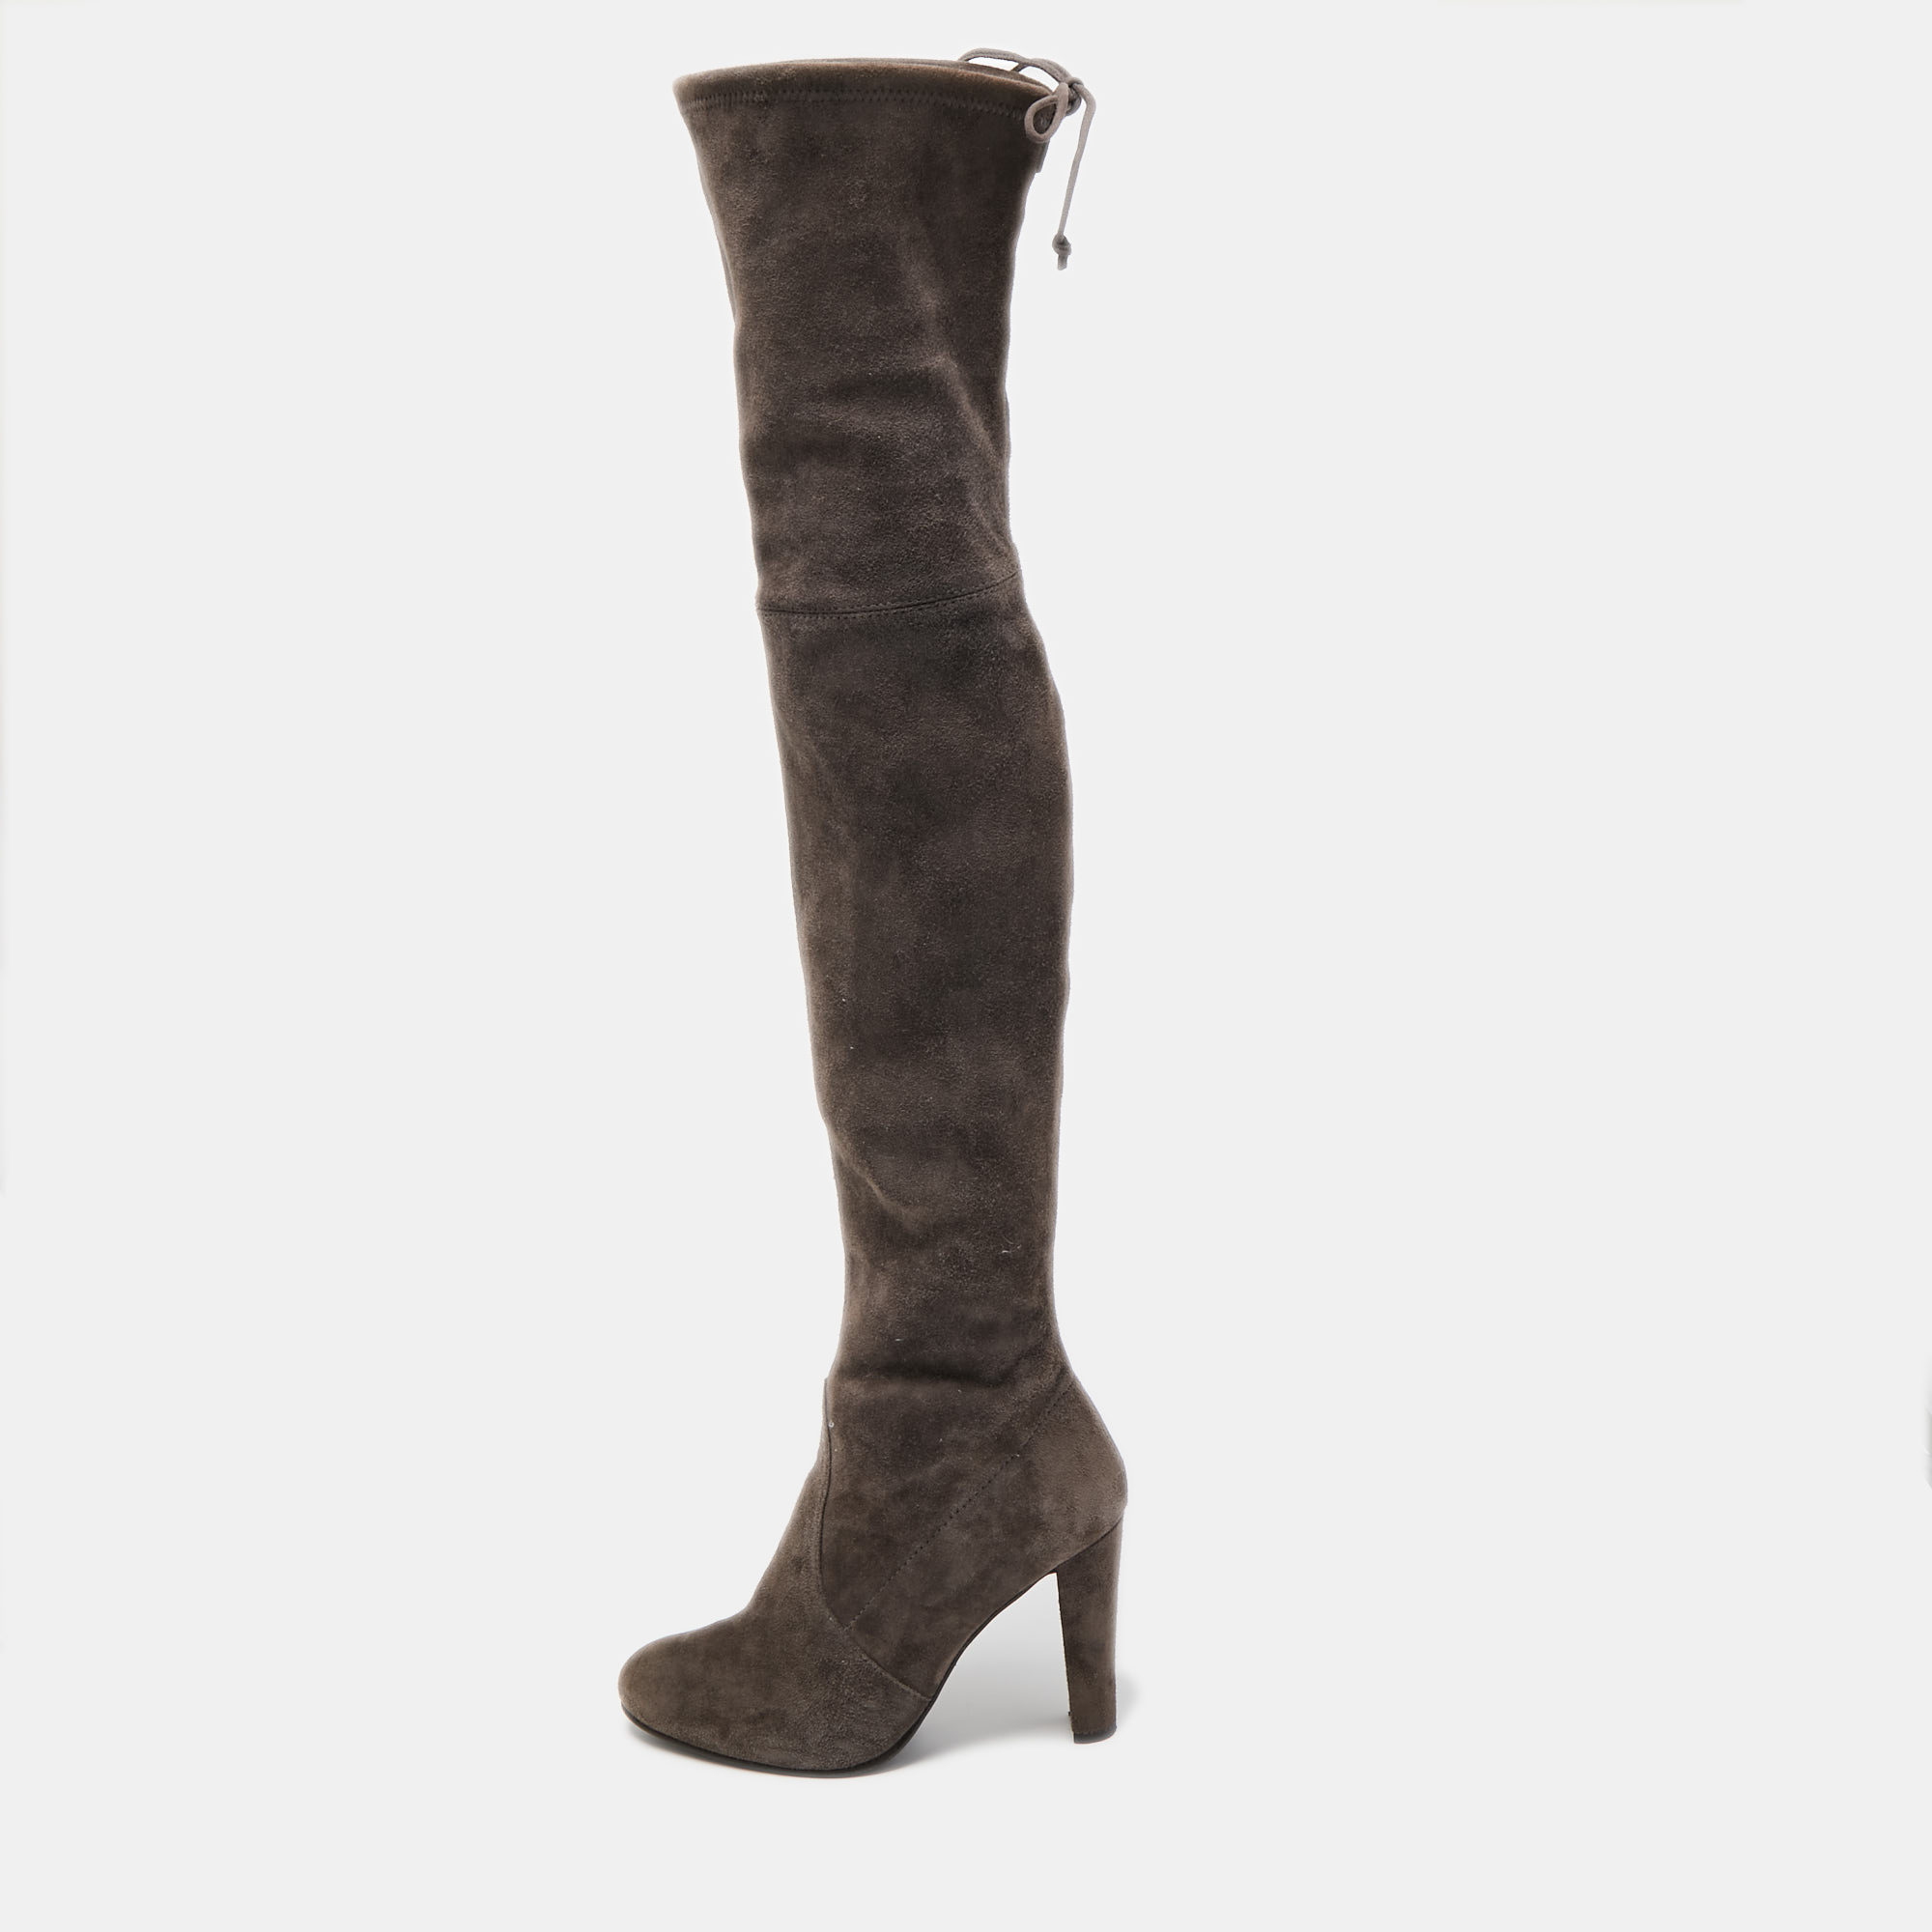 Stuart Weitzman Grey Suede Knee Length Boots Size 37.5